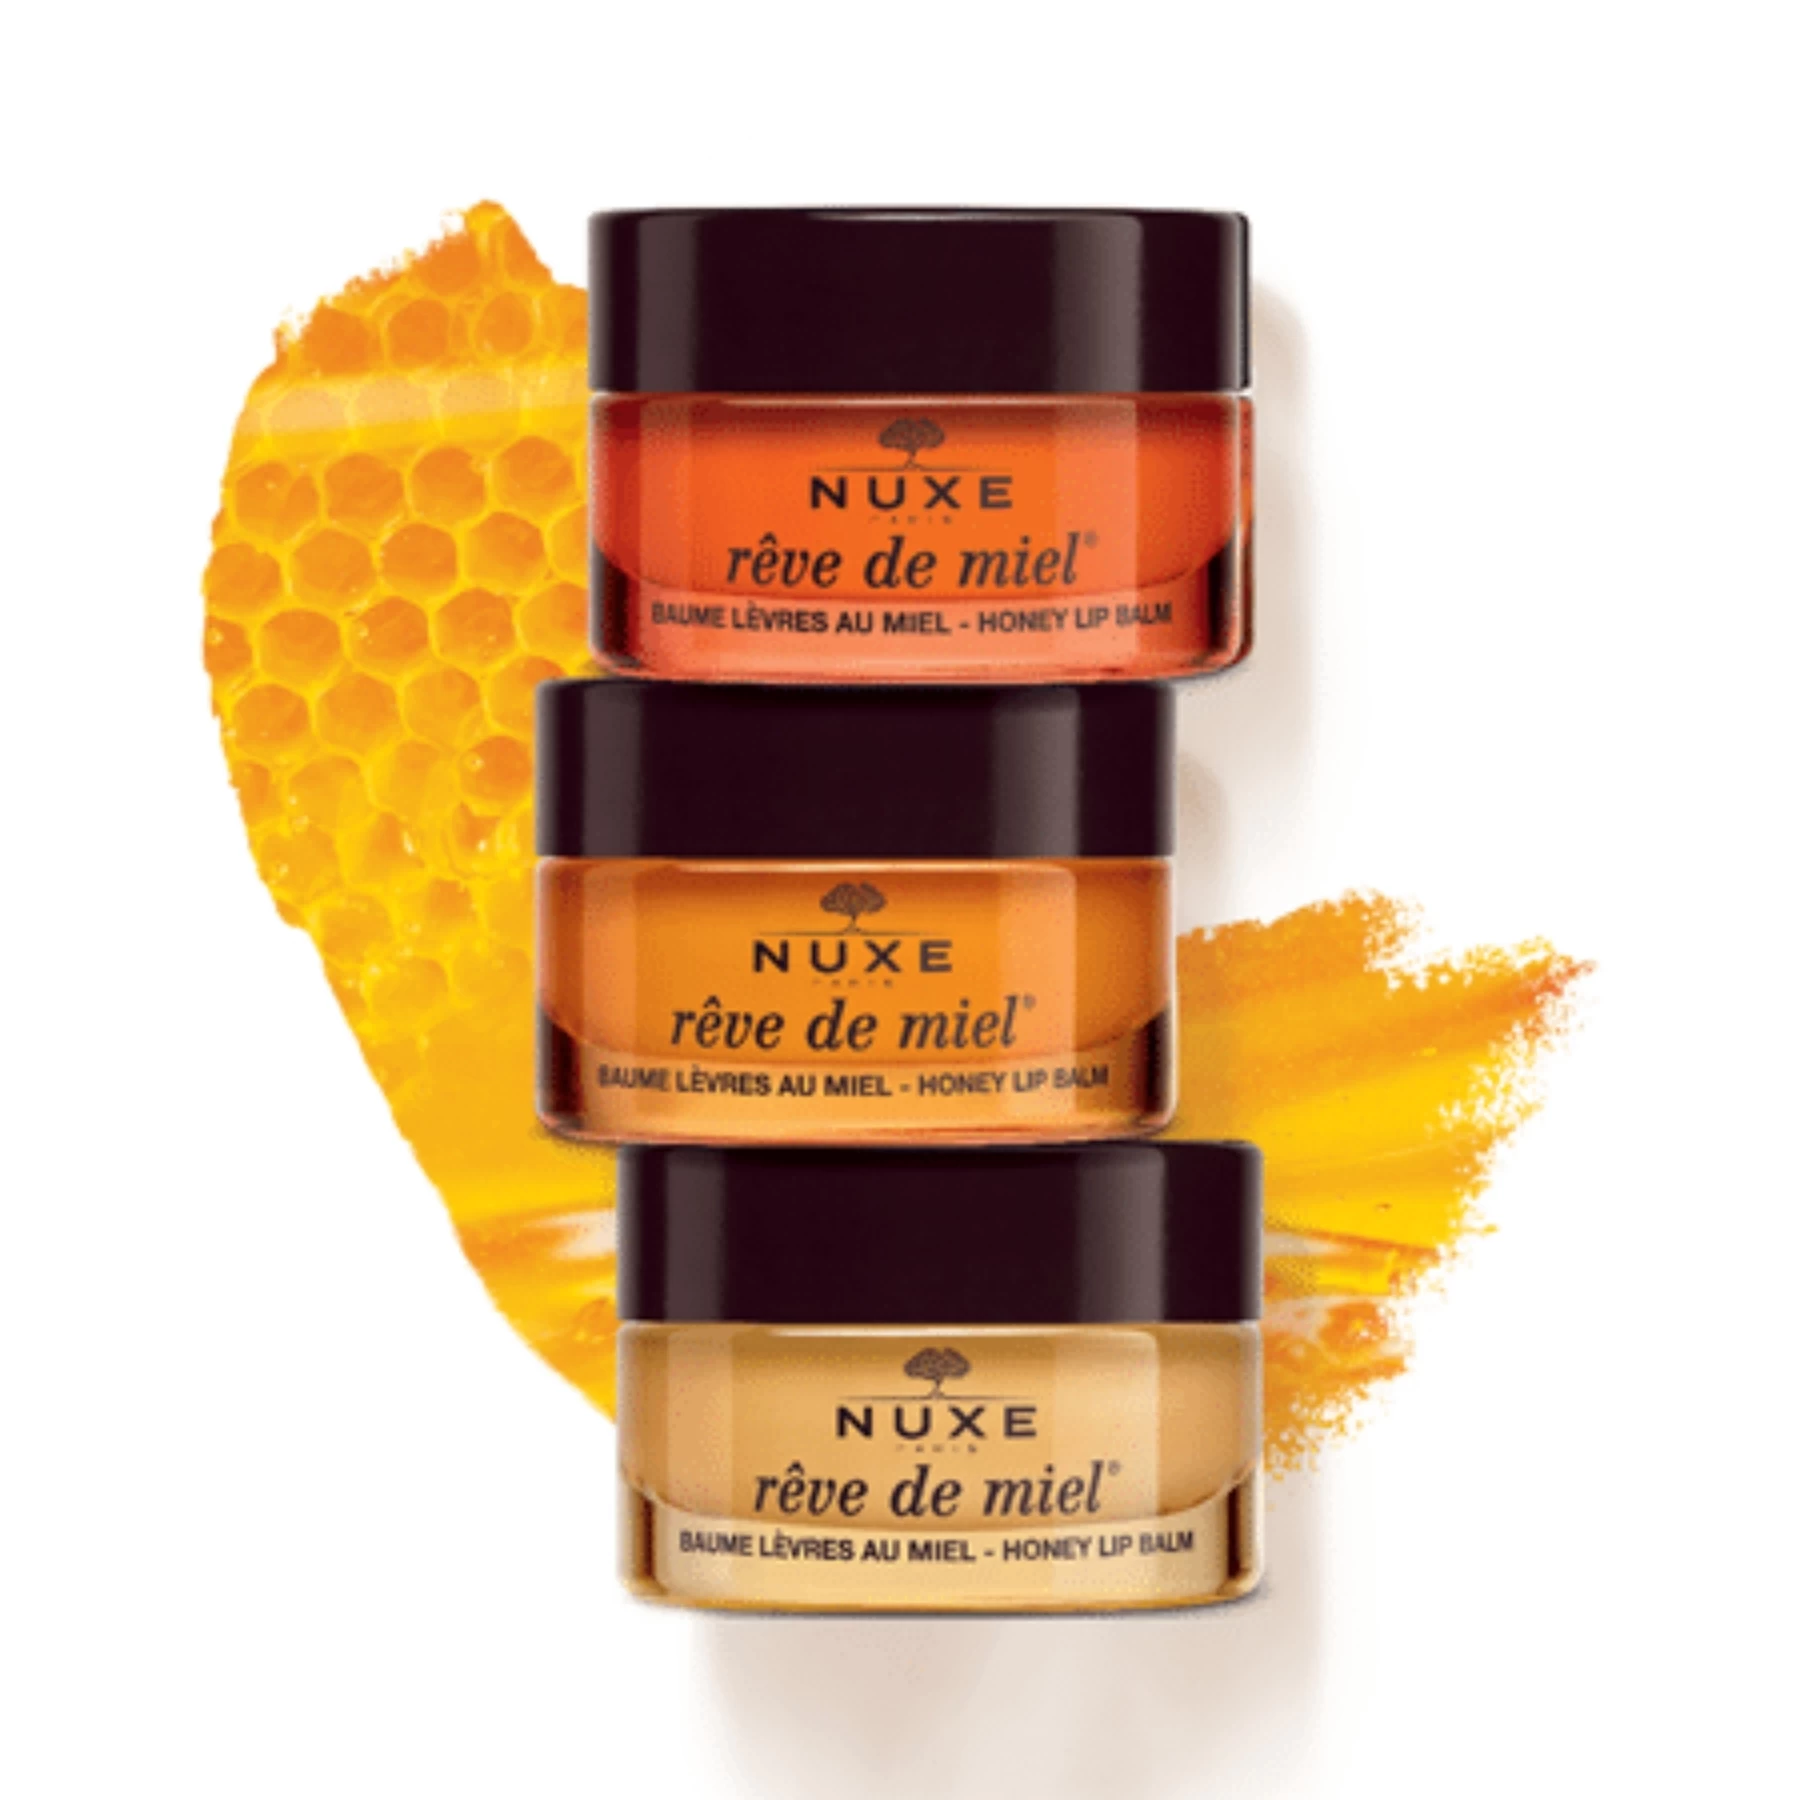 NUXE Rêve de Miel® Baume Levres au Miel Ultra-Nourrissant et Reparateur Bee Happy 15g Limited Edition